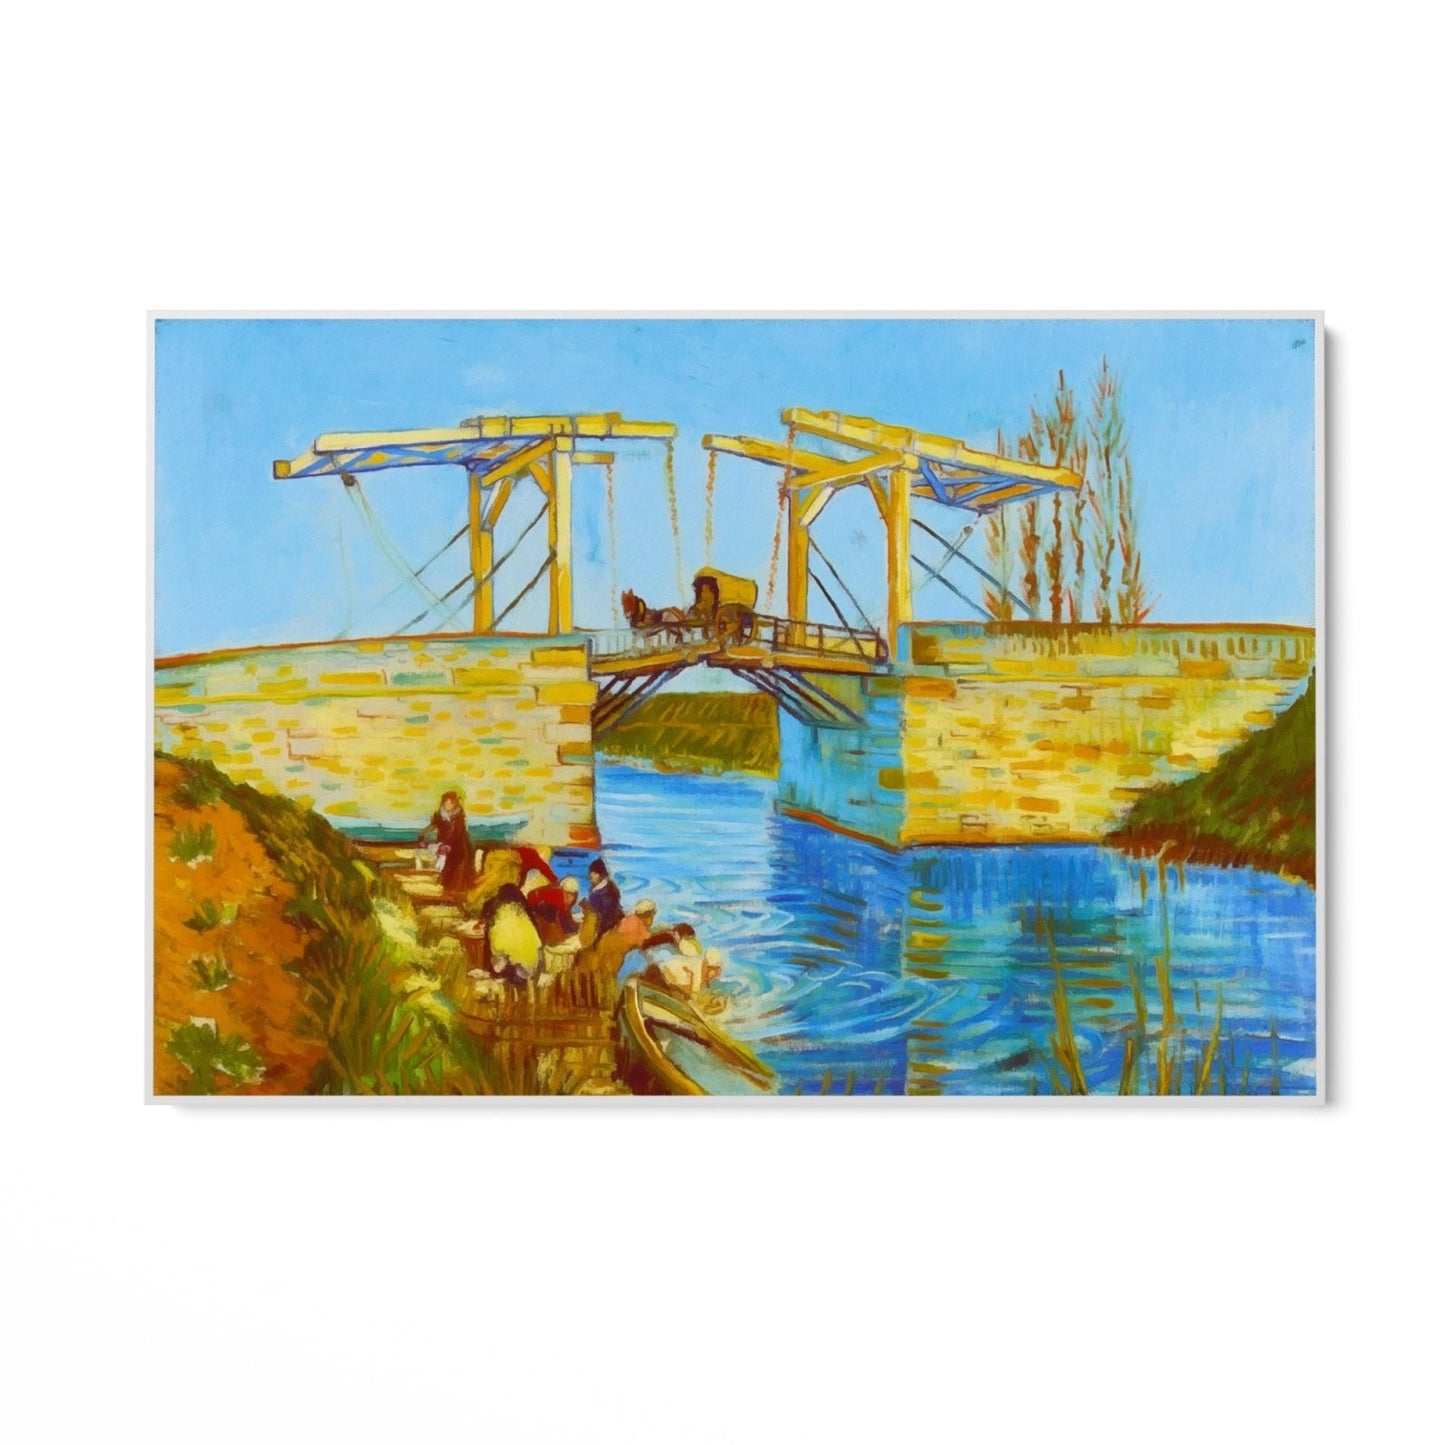 Bridges of Arles, Vincent Van Gogh